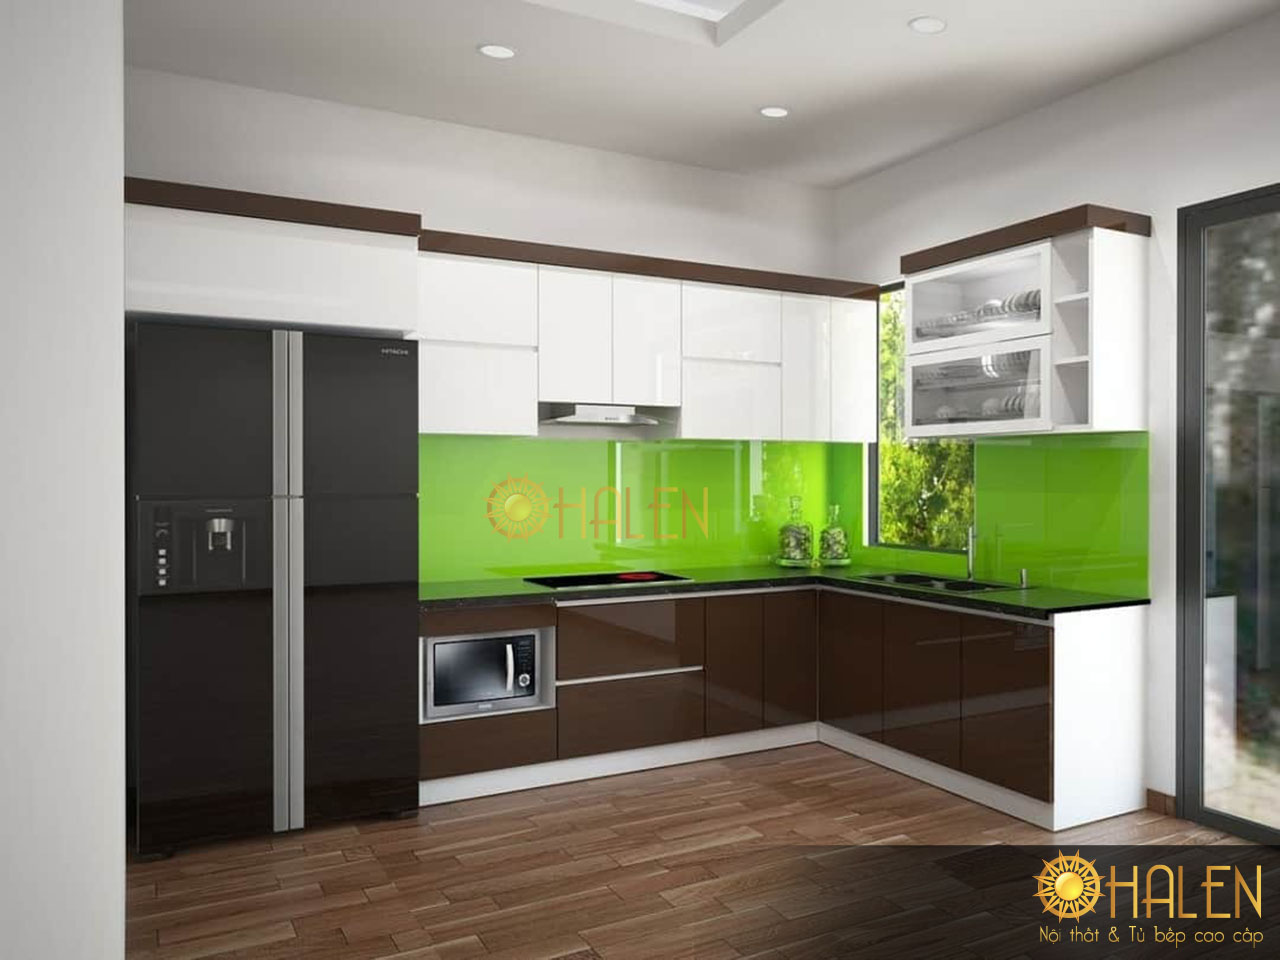 Kính bếp màu xanh lá cây mát mẻ và là điểm nhấn cho căn bếp